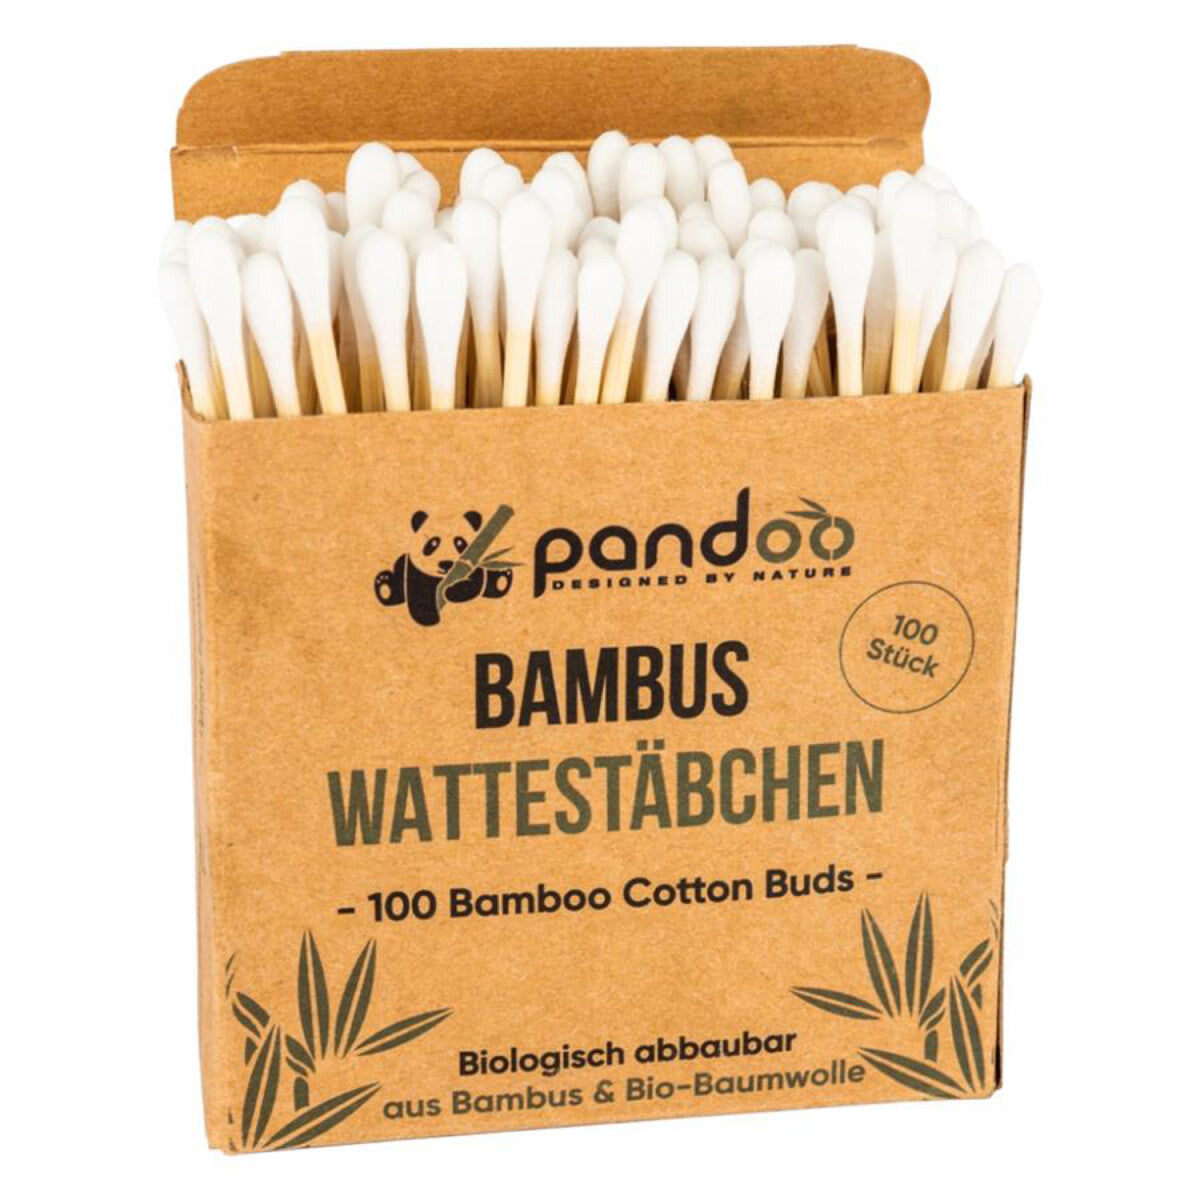 PANDOO Bambus Wattestäbchen 1 Pkg. - 100 Stk.